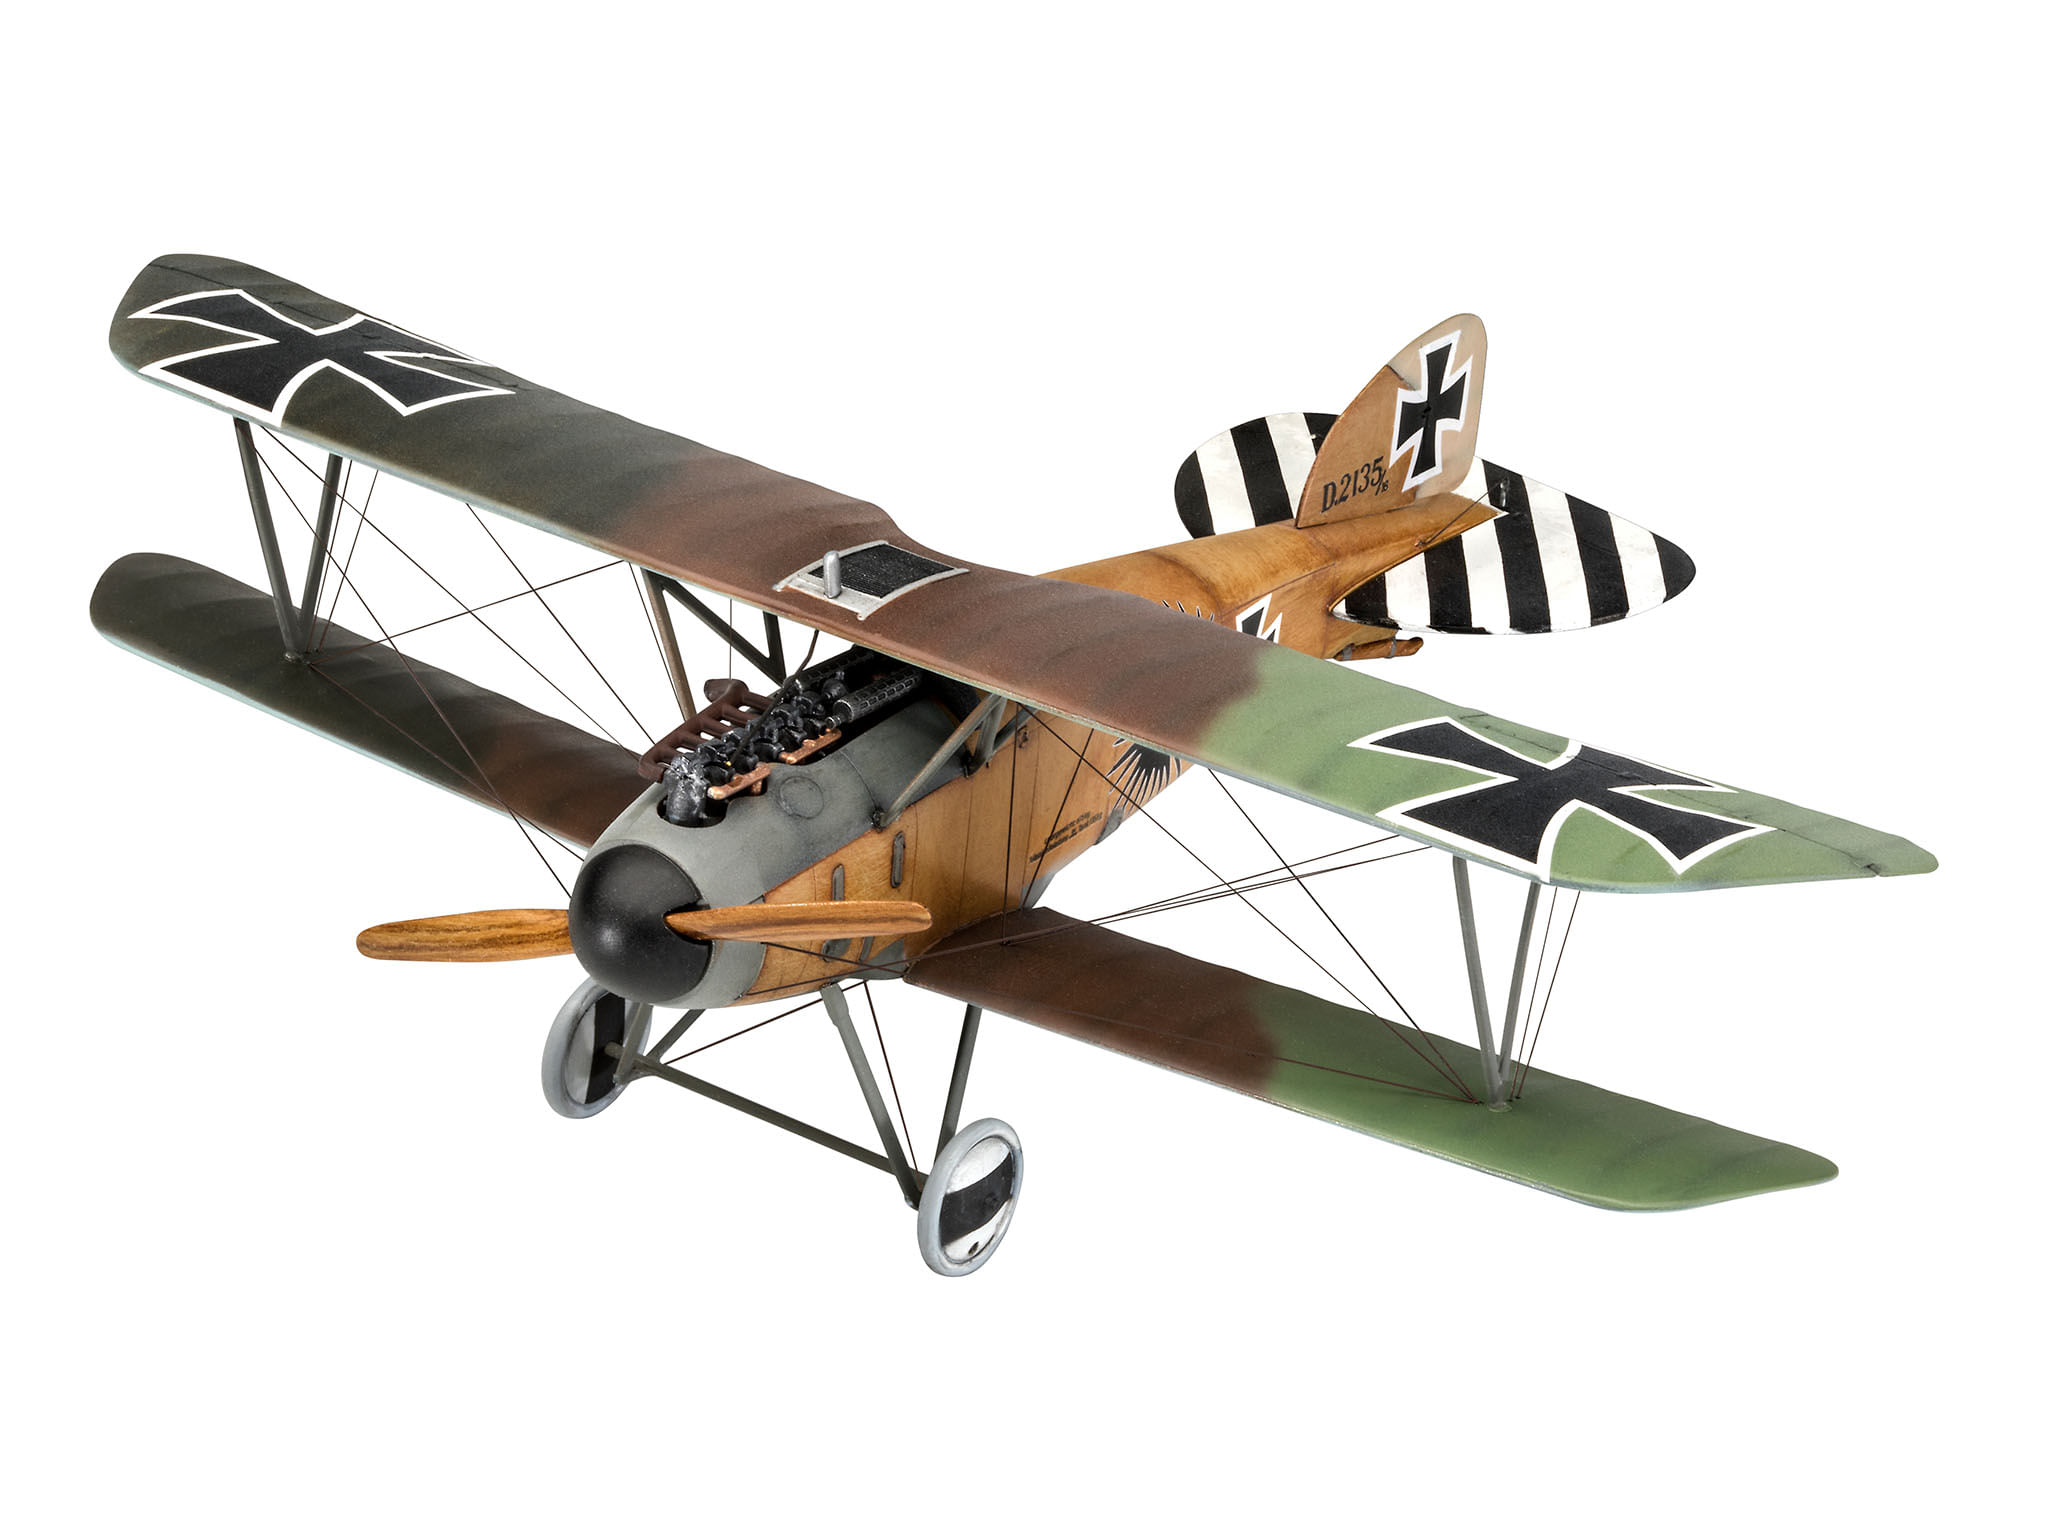 Albatross britânico 3D lutador modelo puzzle, guerra avião, sandpan jogo,  aeronave coleções, tela do mundo, D.